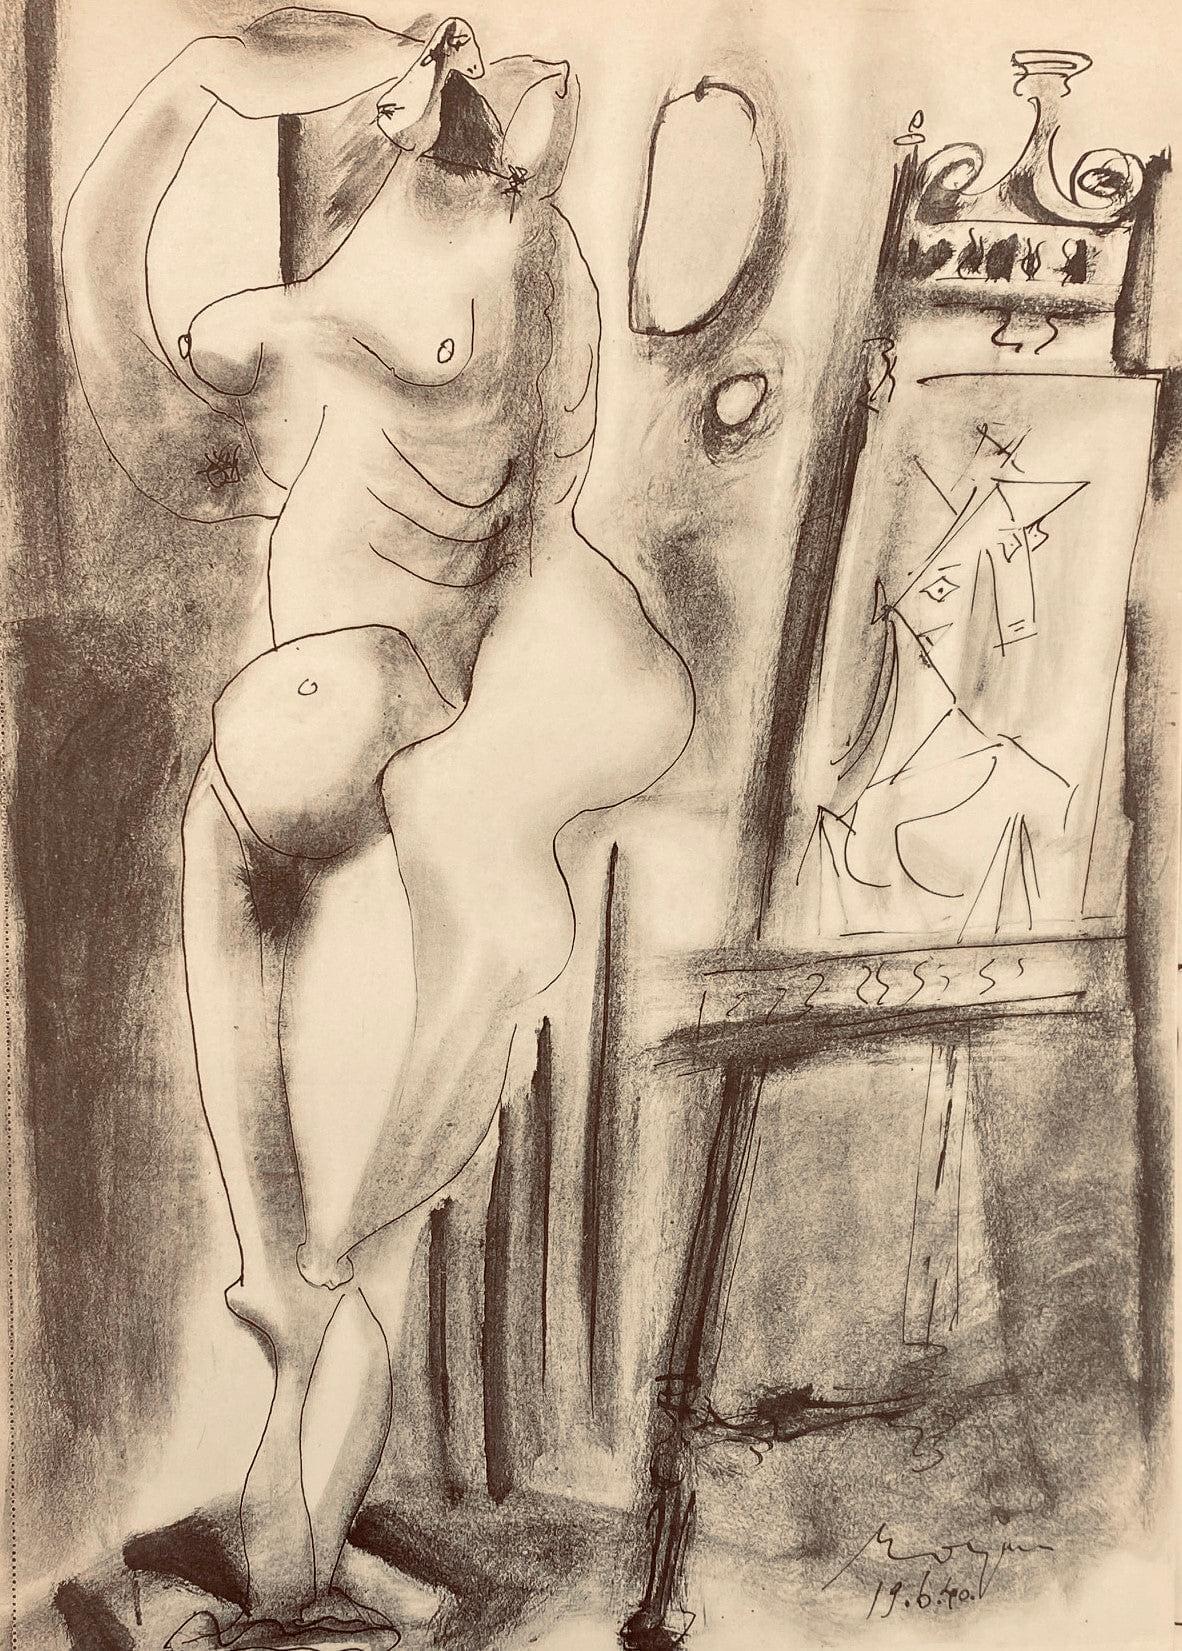 Picasso, Composition, Carnet de dessins de Picasso, Cahiers d’Art (after) For Sale 4